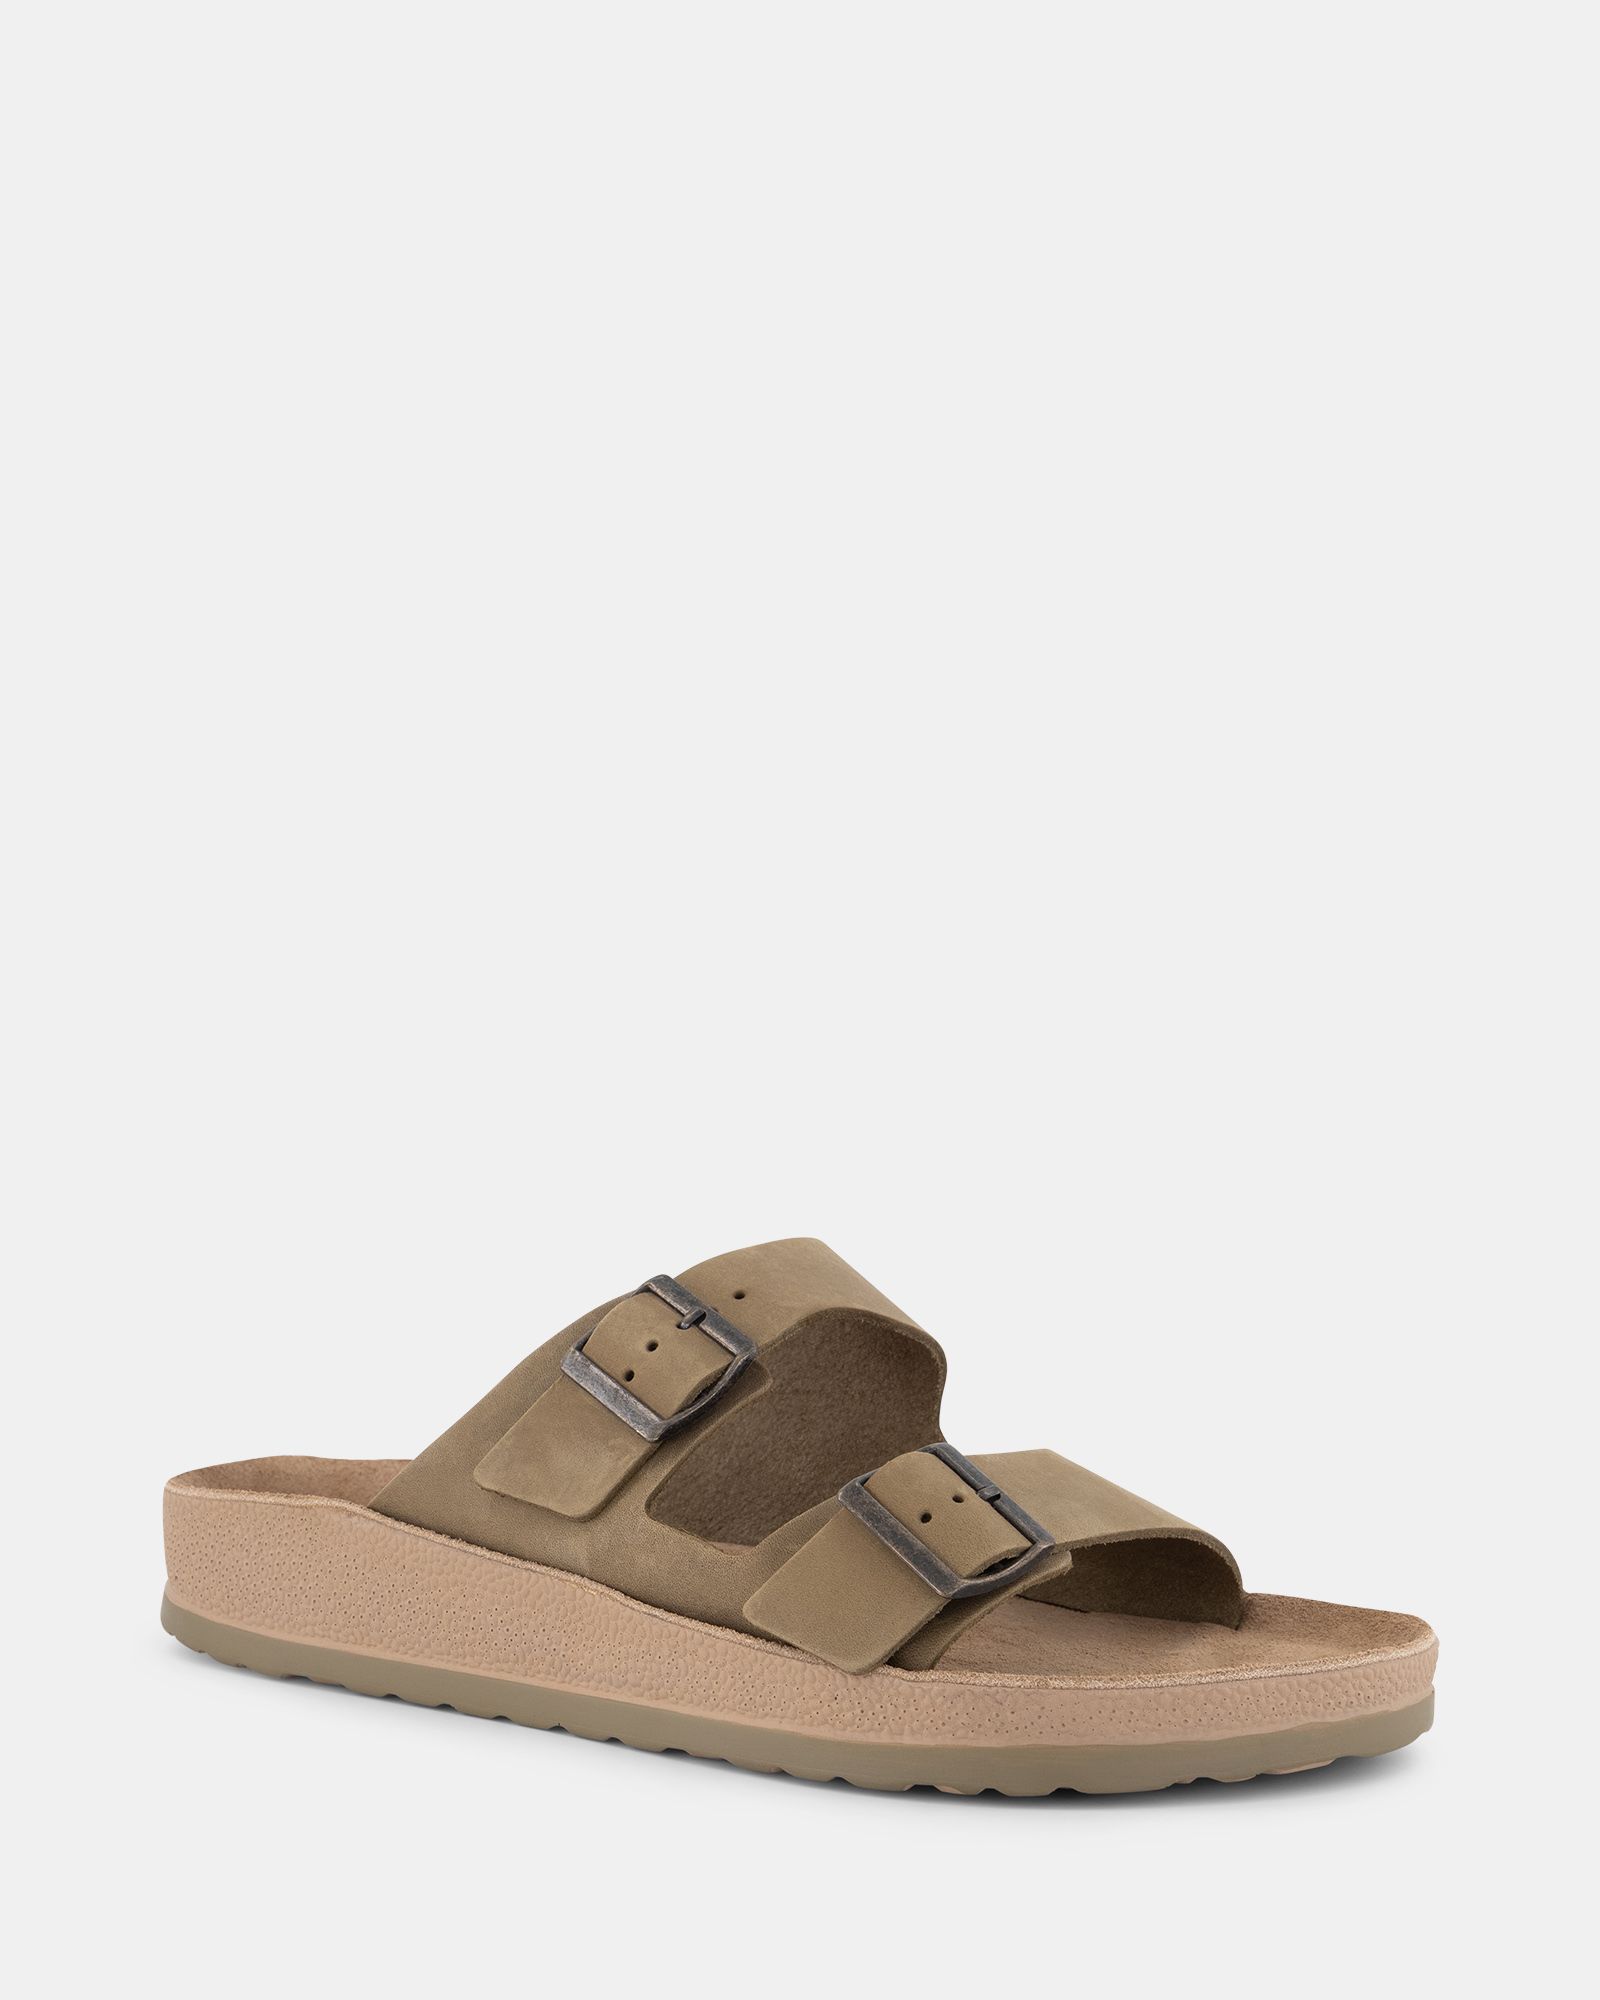 Buy LEONIDAS Khaki sandals Online at Shoe Connection